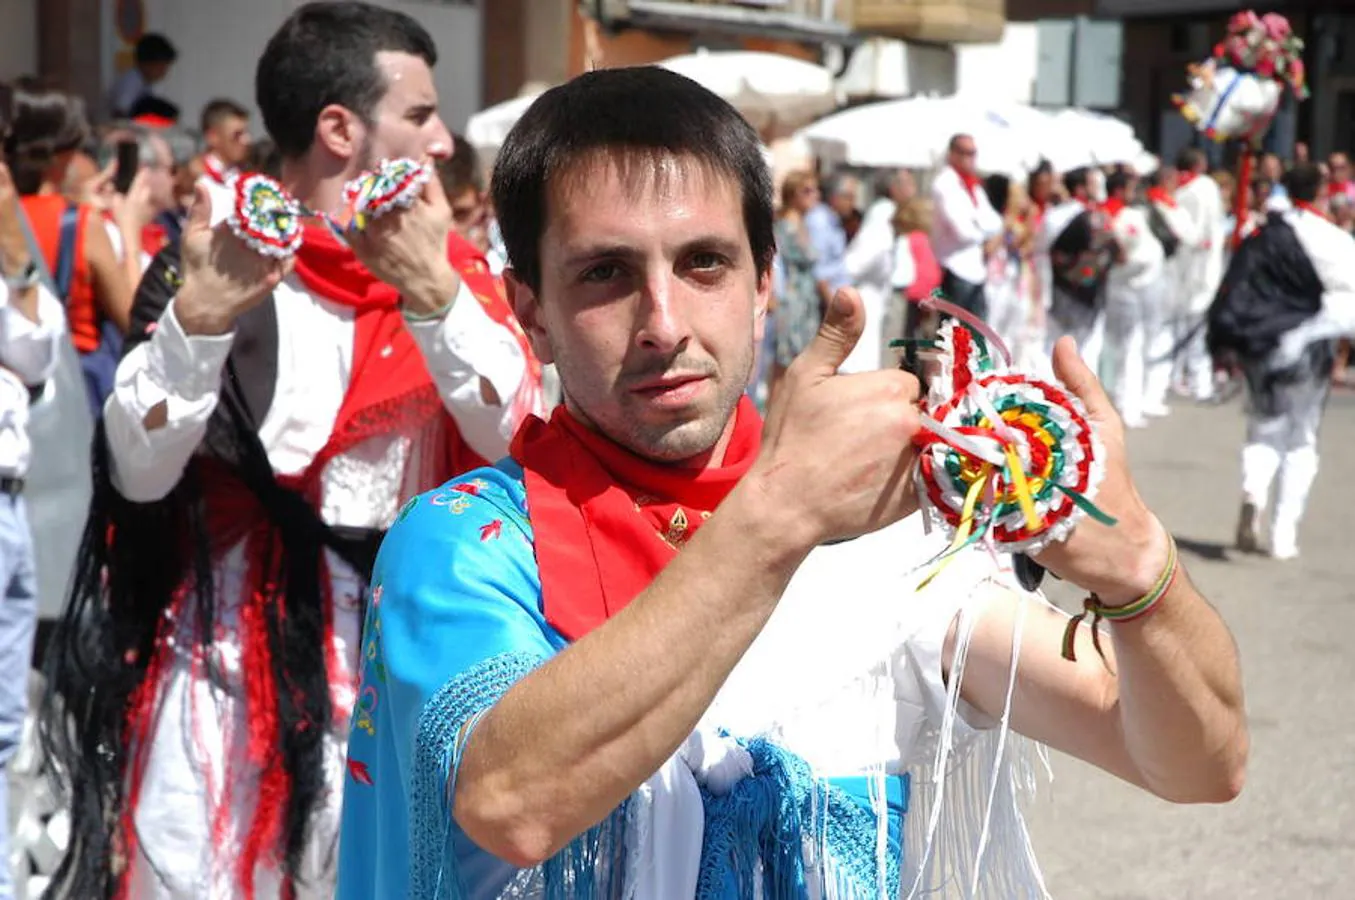 Procesión, misa, gaita y bailes conjuntos de las dos parroquias como festejo y comunión de los cerveranos en el día grande de sus fiestas. 